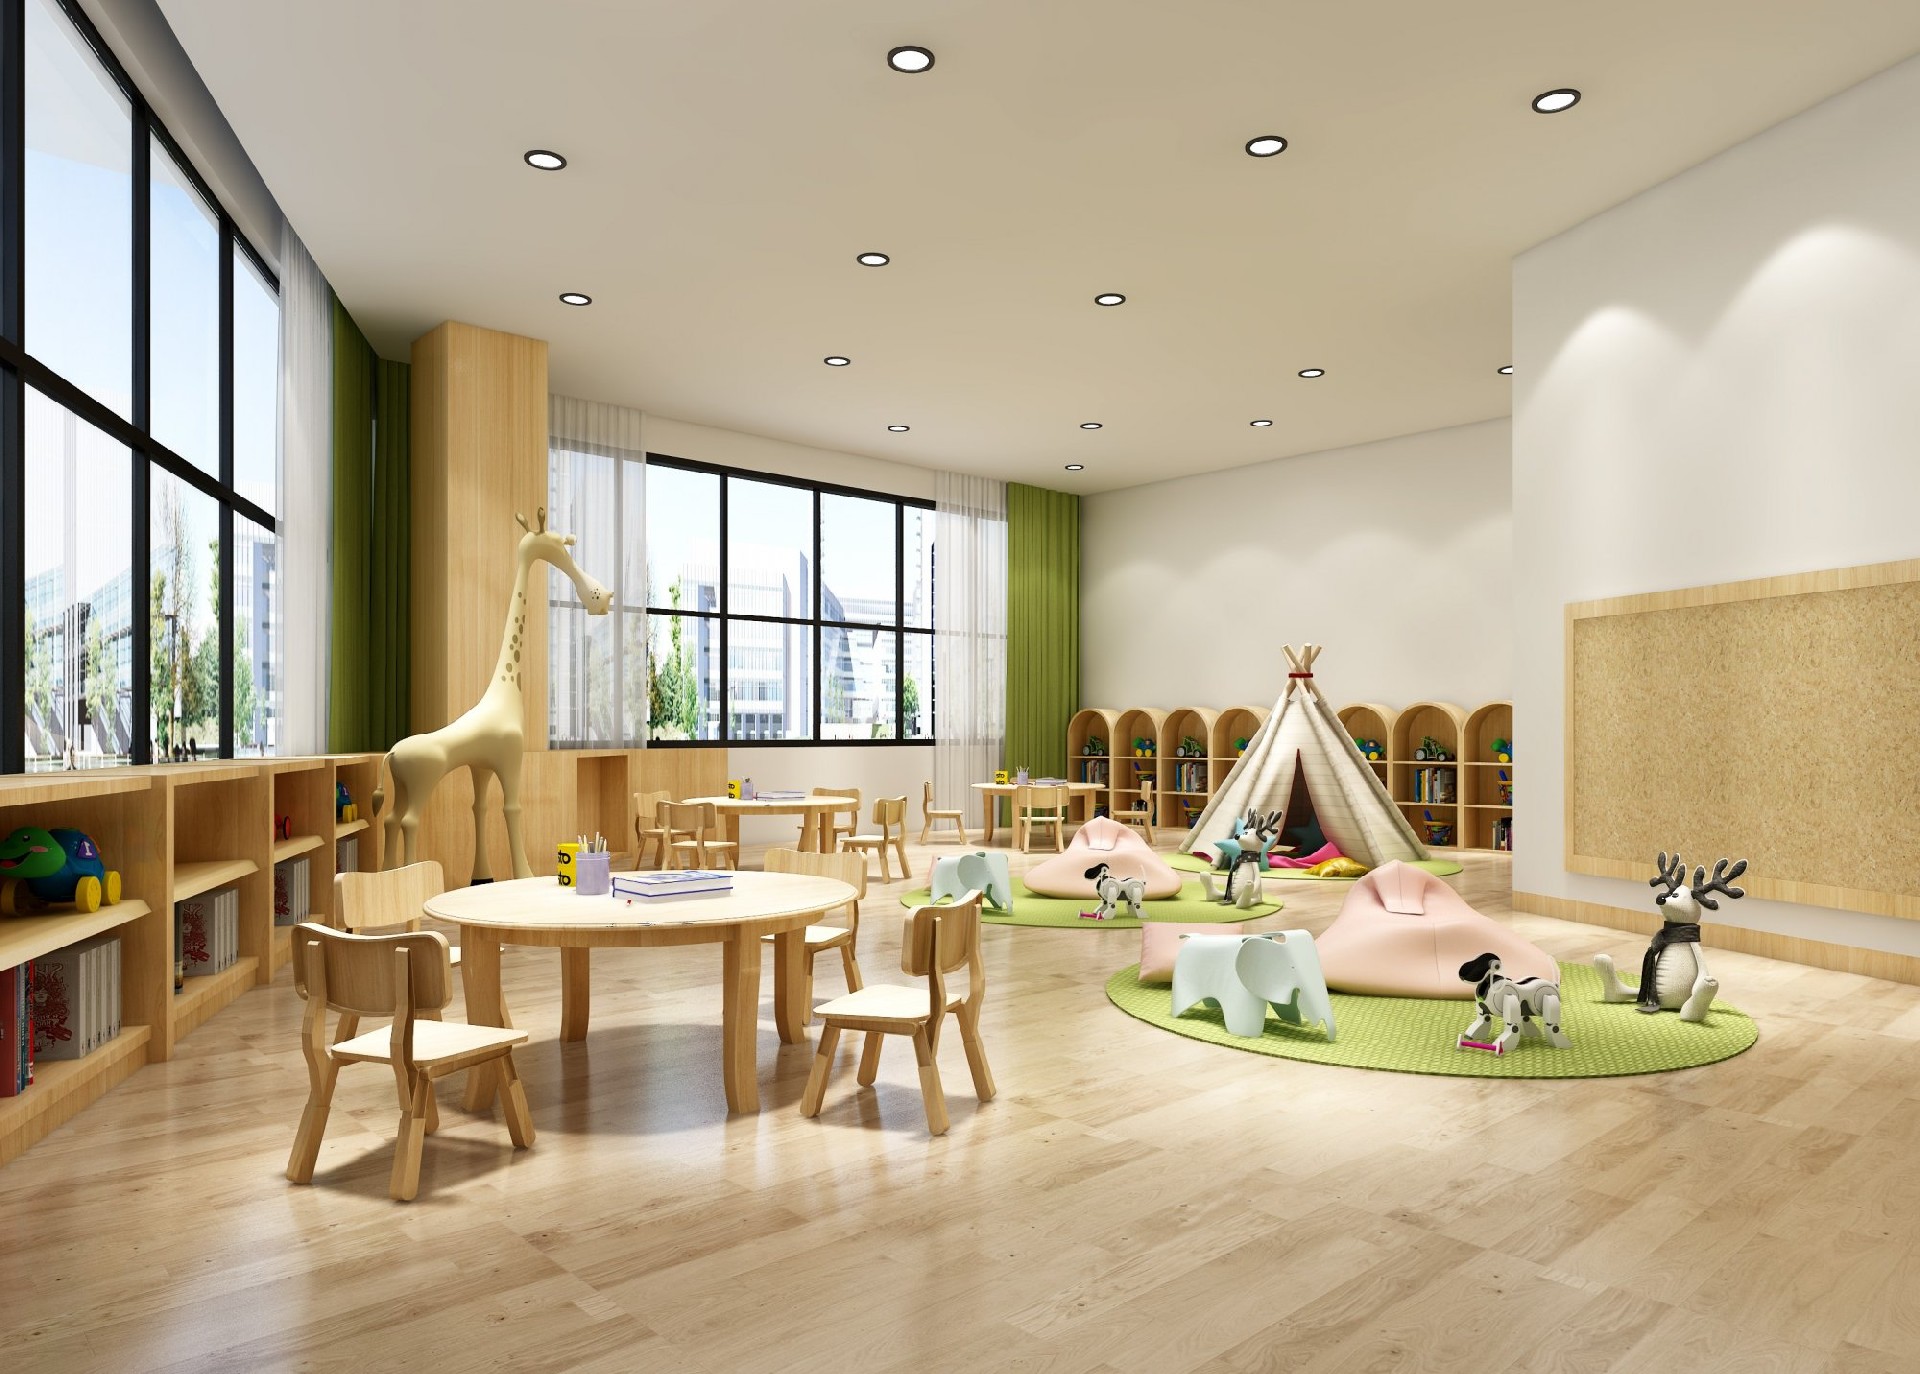 嘉兴幼儿园装修设计效果图：打造舒适、安全、充满童趣的幼儿园环境